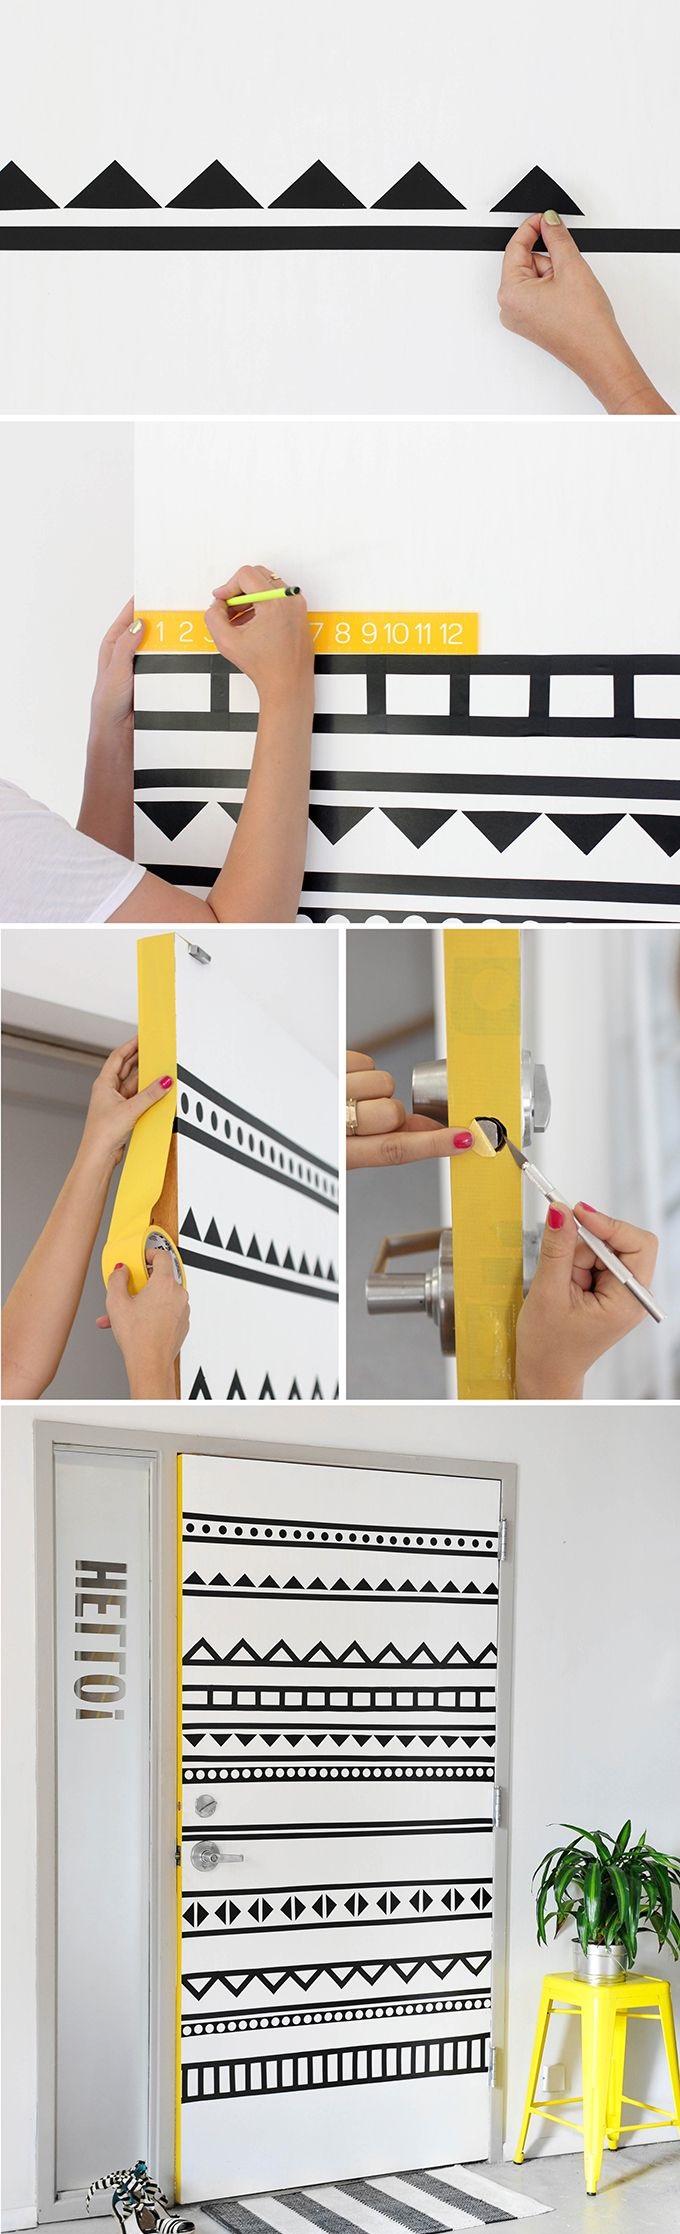 decoracion-para-paredes-10-formas-de-darle-un-toque-glam-3